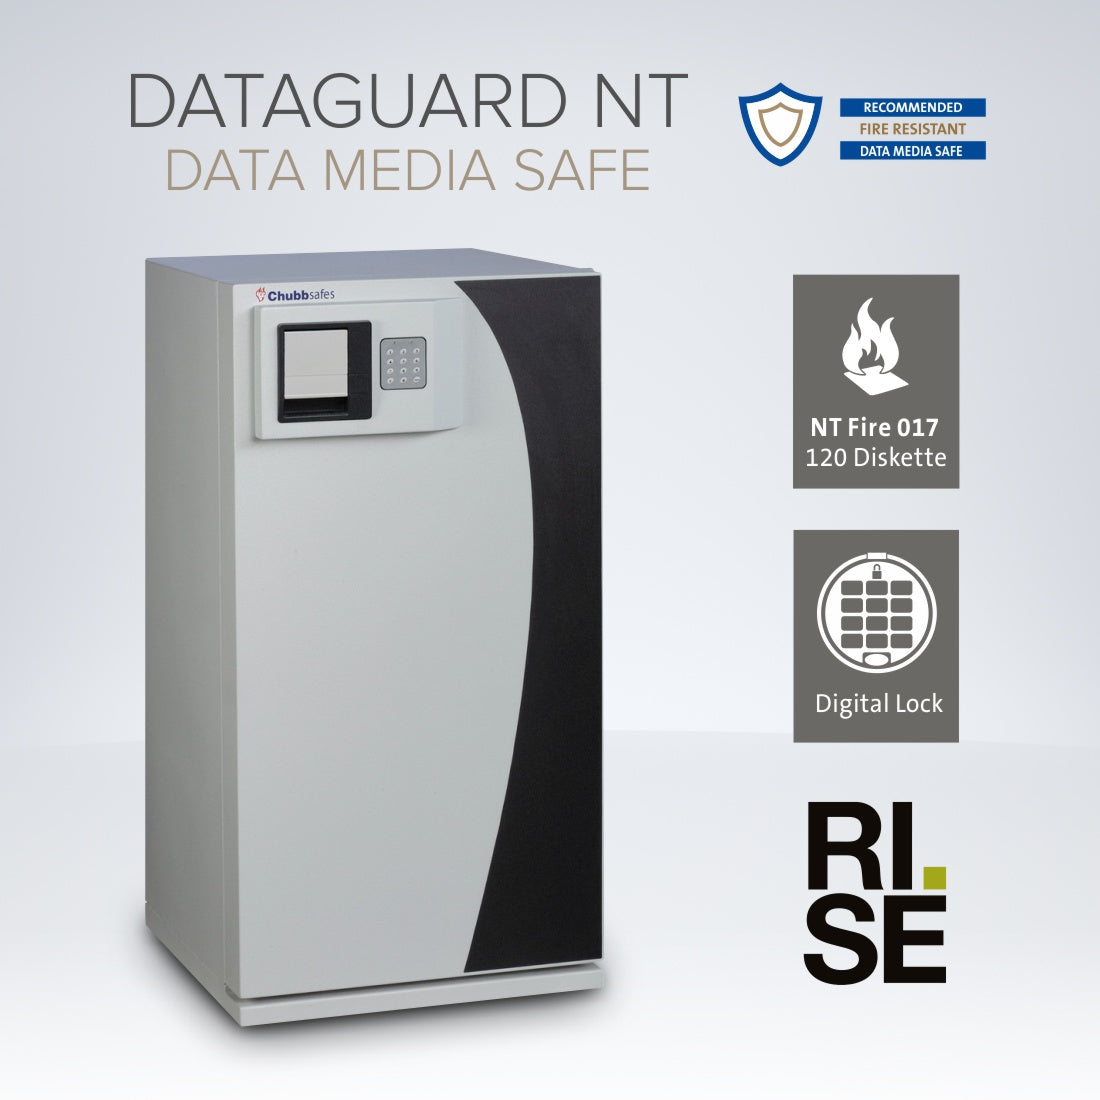 DataGuard NT Data Media Safe Size 80E